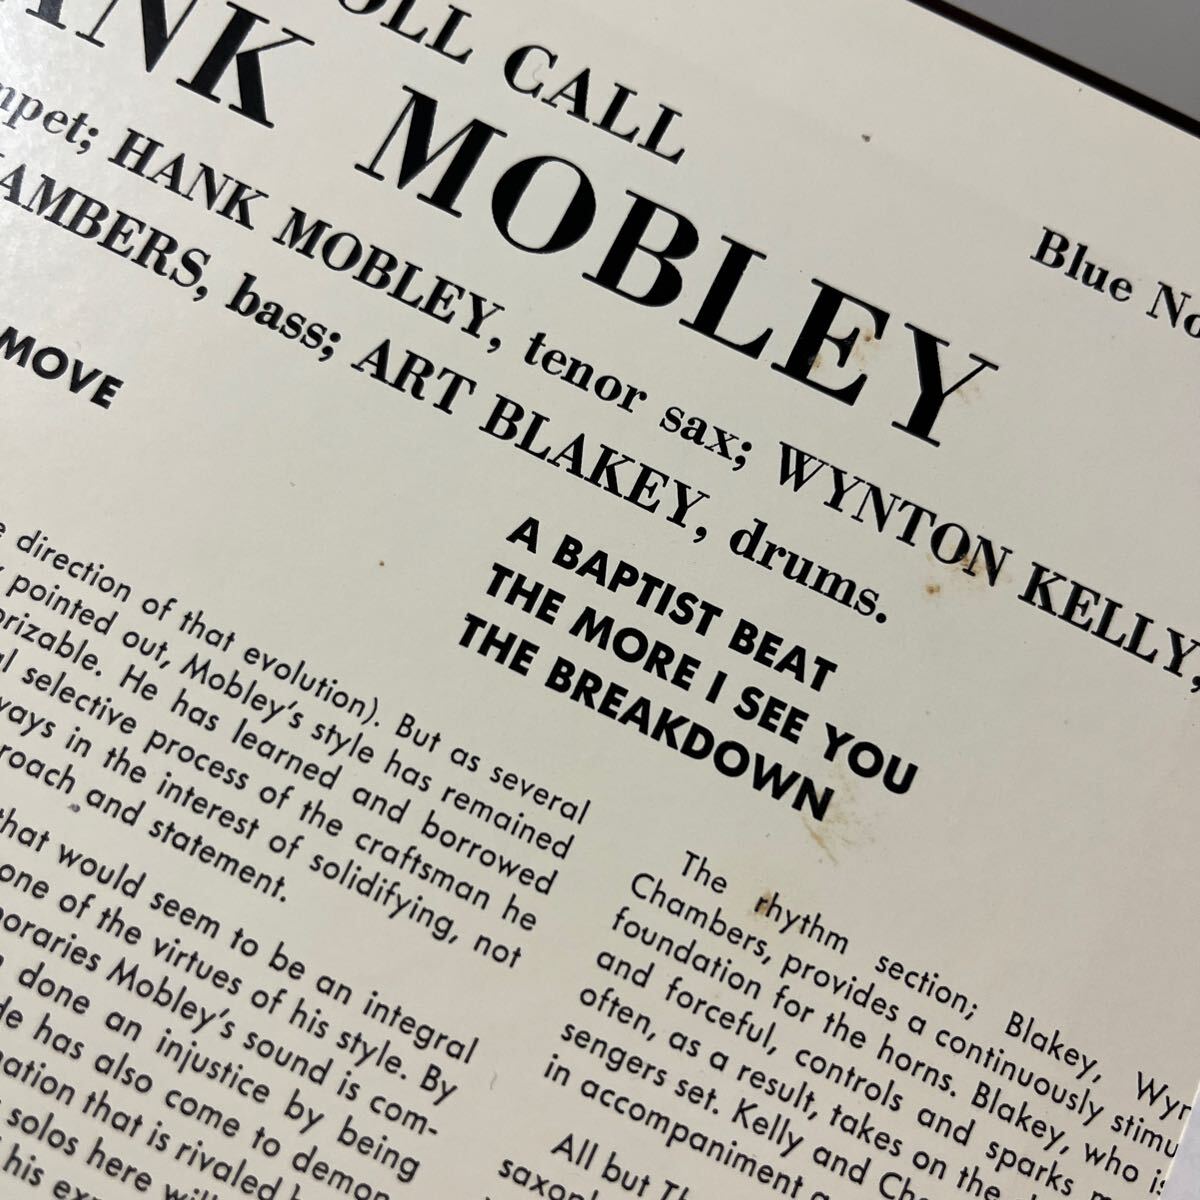 【BLUE NOTE 帯付き 】HANK MOBLEY『ROLL CALL』ハンク・モブレー / ロールコール/FREDDIE HUBBARD / WYNTON KELLY / PAUL CHAMBERS_画像7